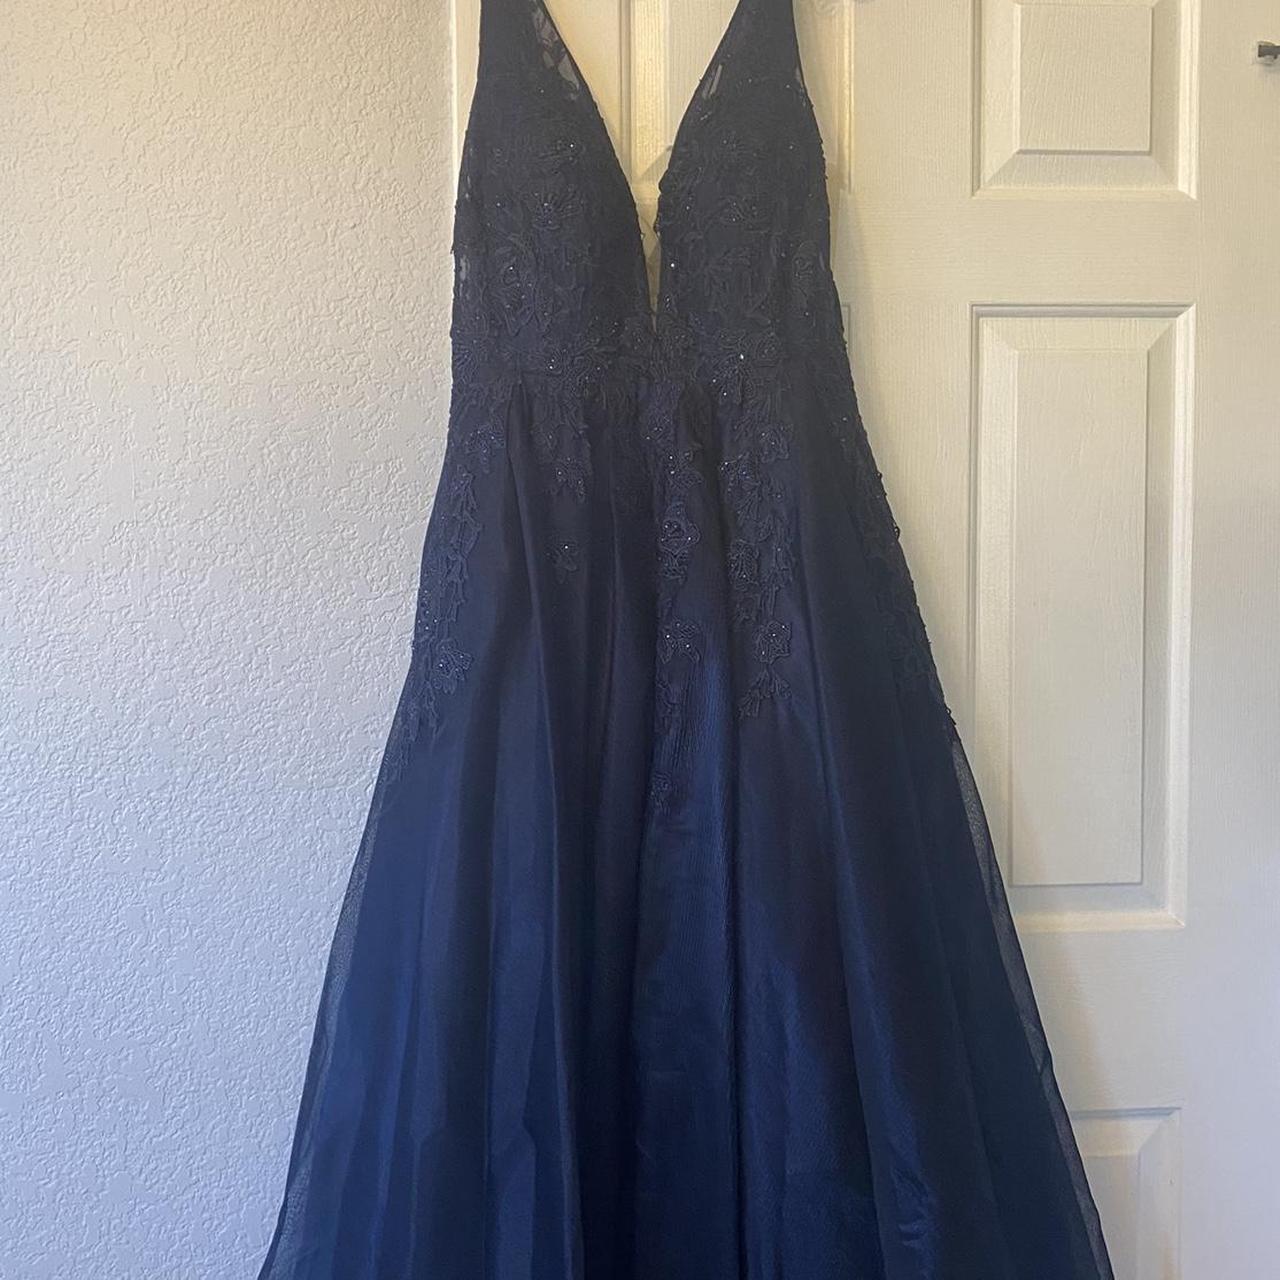 Aspeed Design Women's Blue and Navy Dress